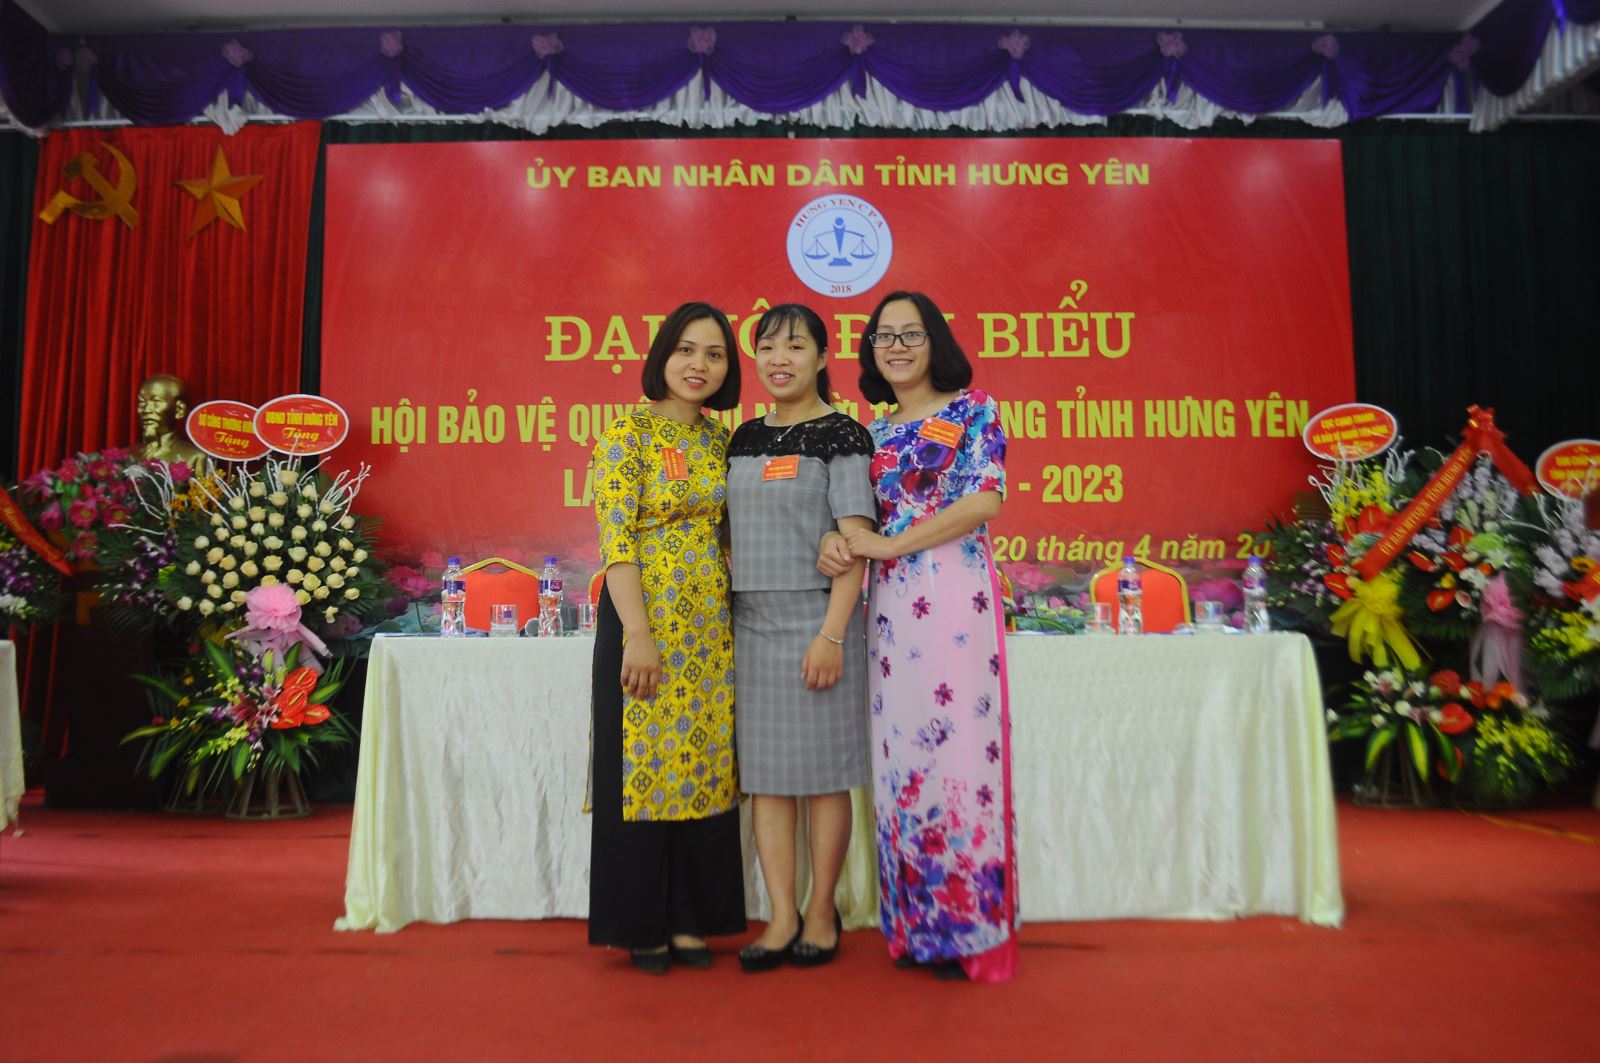 Đại hội Hội Bảo vệ quyền lợi người tiêu dùng tỉnh Hưng Yên lần thứ I, nhiệm kỳ 2018 -2023